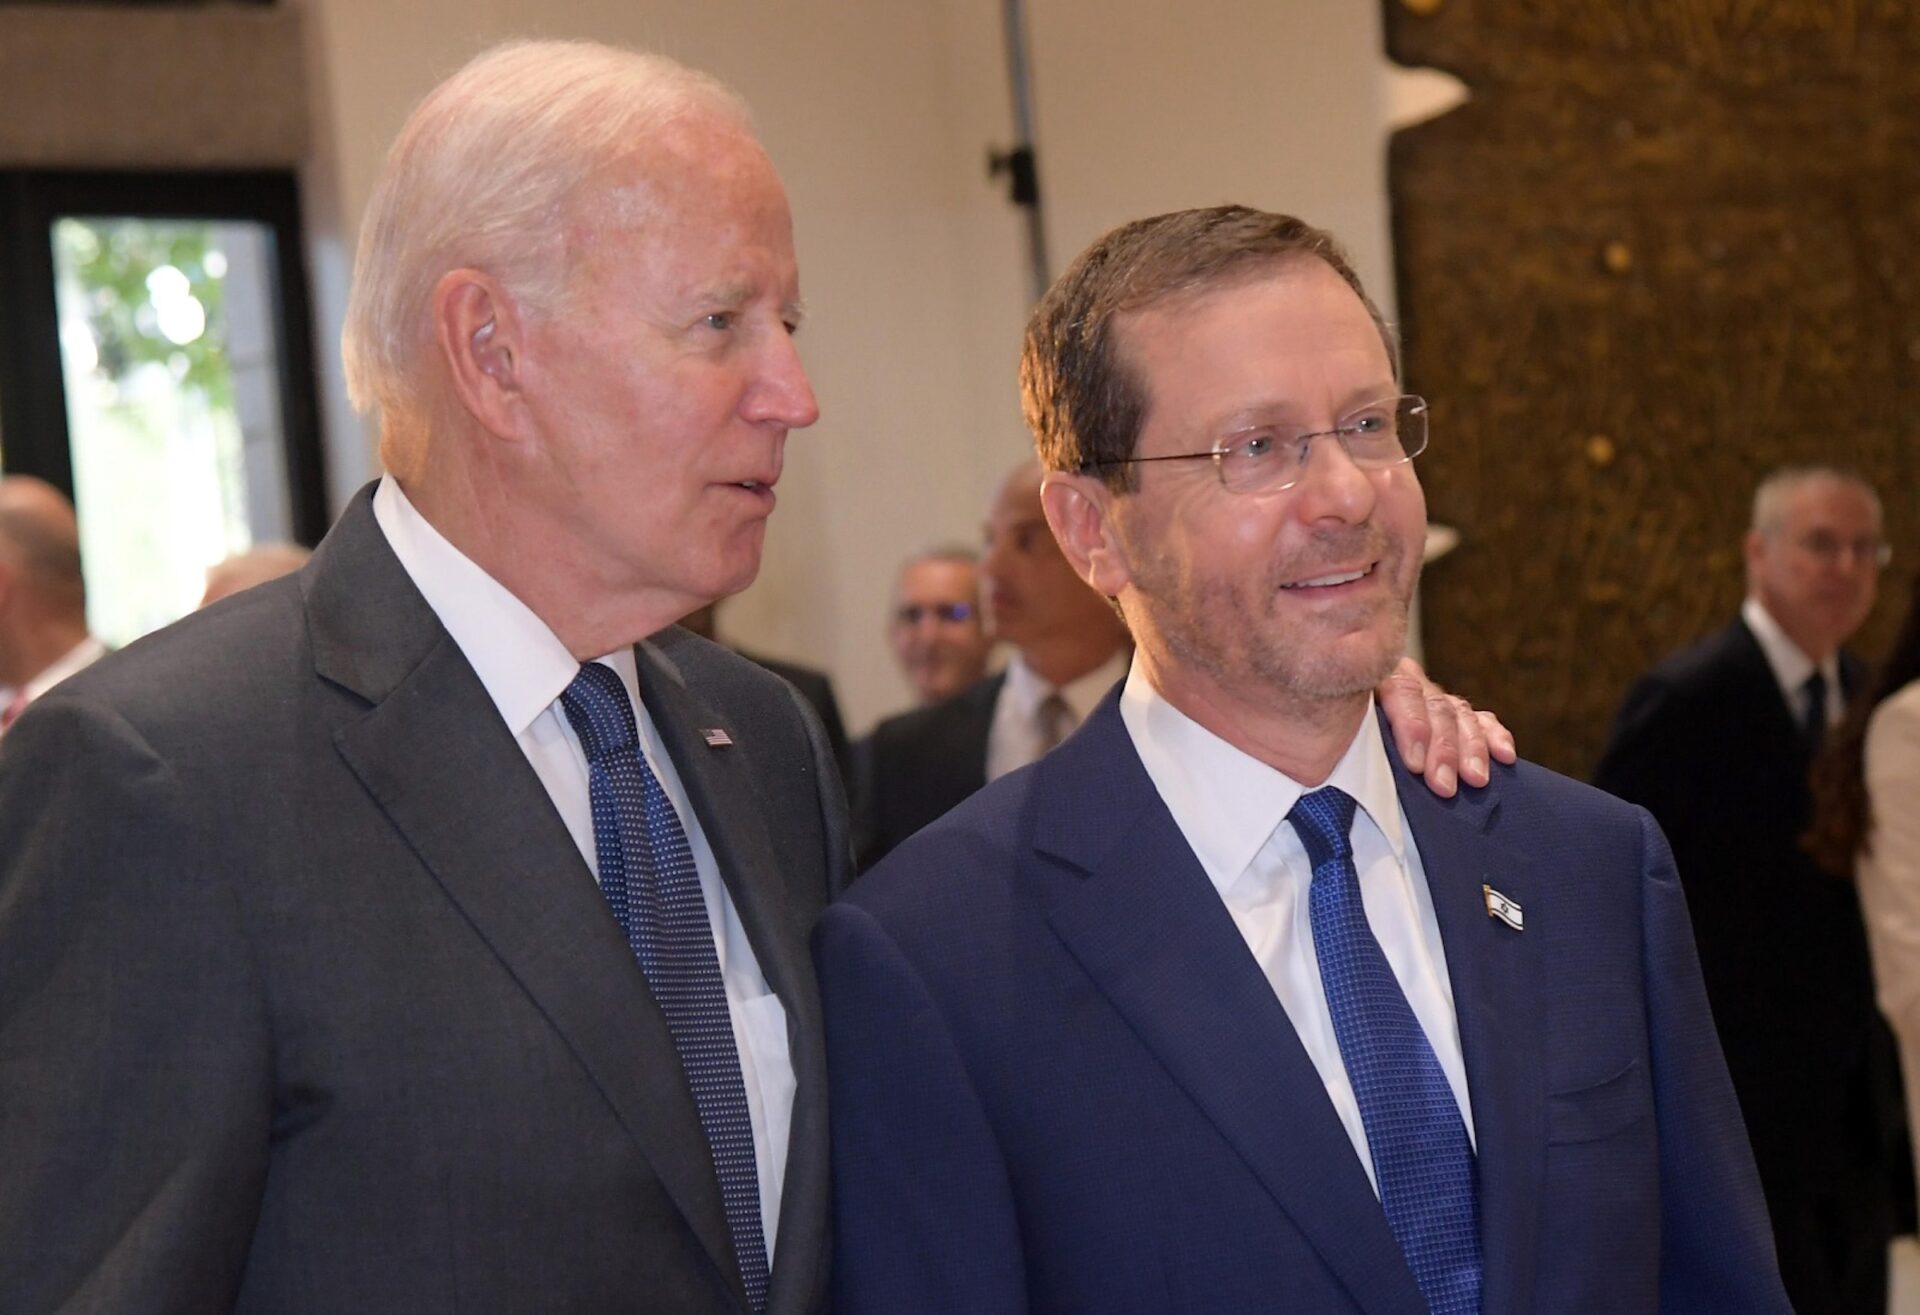 Herzog to meet Biden at White House on Oct. 26